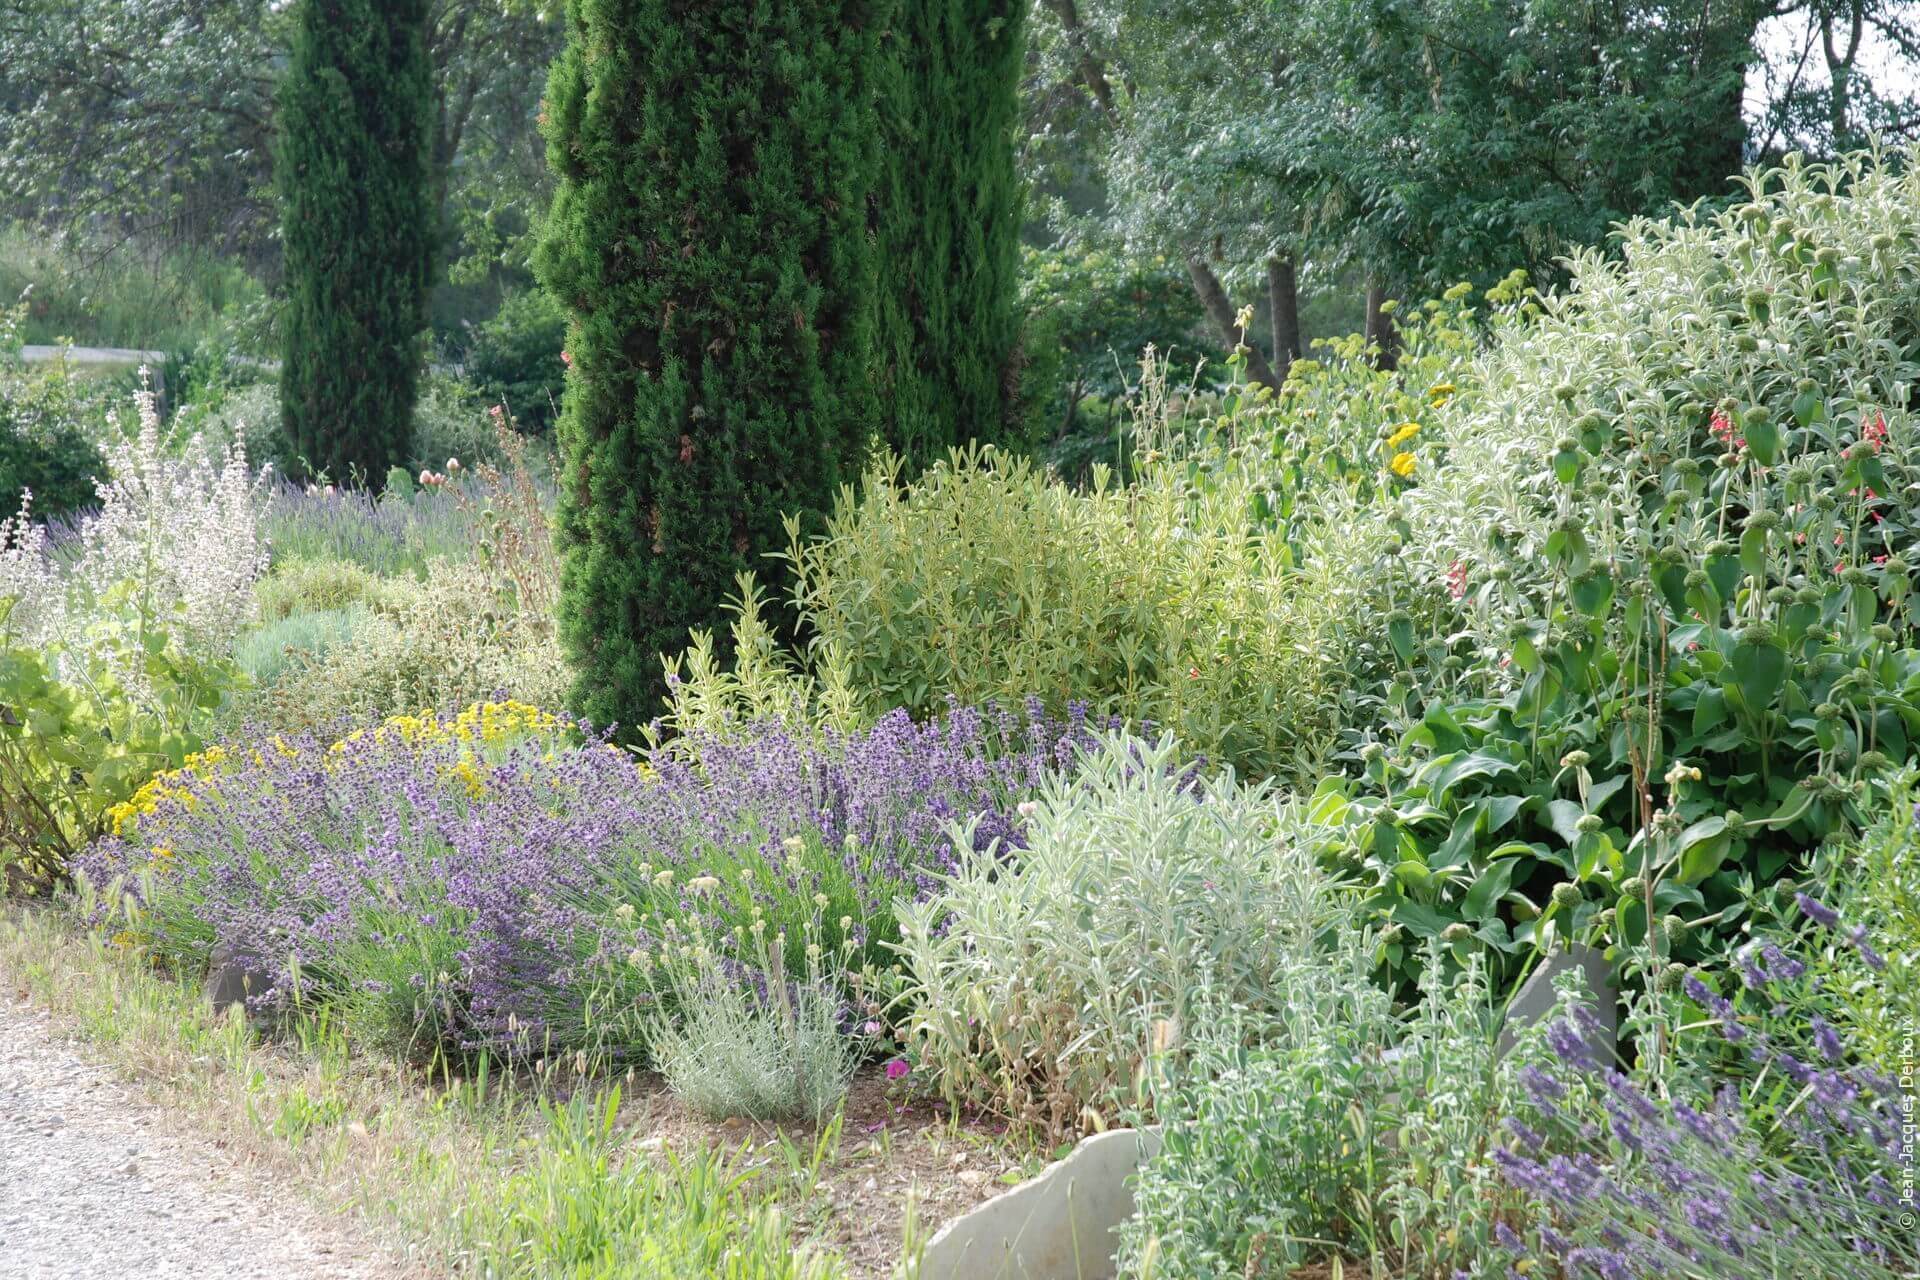 Jardin de village, courette pavée, solanum, immortelle, végétaux méditerranéens.